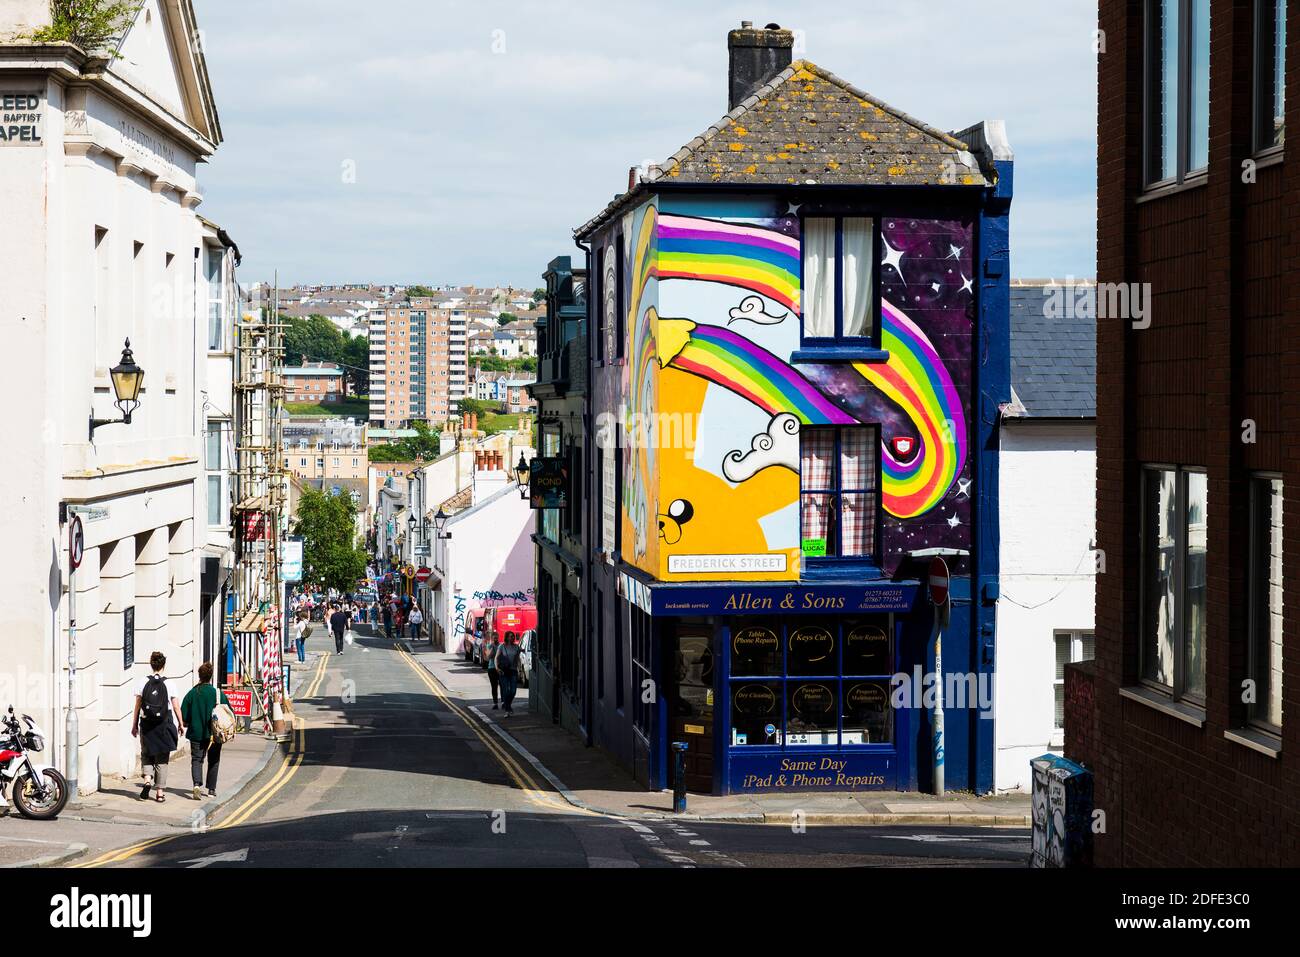 Vue sur Gloucester Road et le bâtiment avec peinture murale au coin de la rue Frederick. Brighton, East Sussex, Angleterre, Royaume-Uni, Europ Banque D'Images